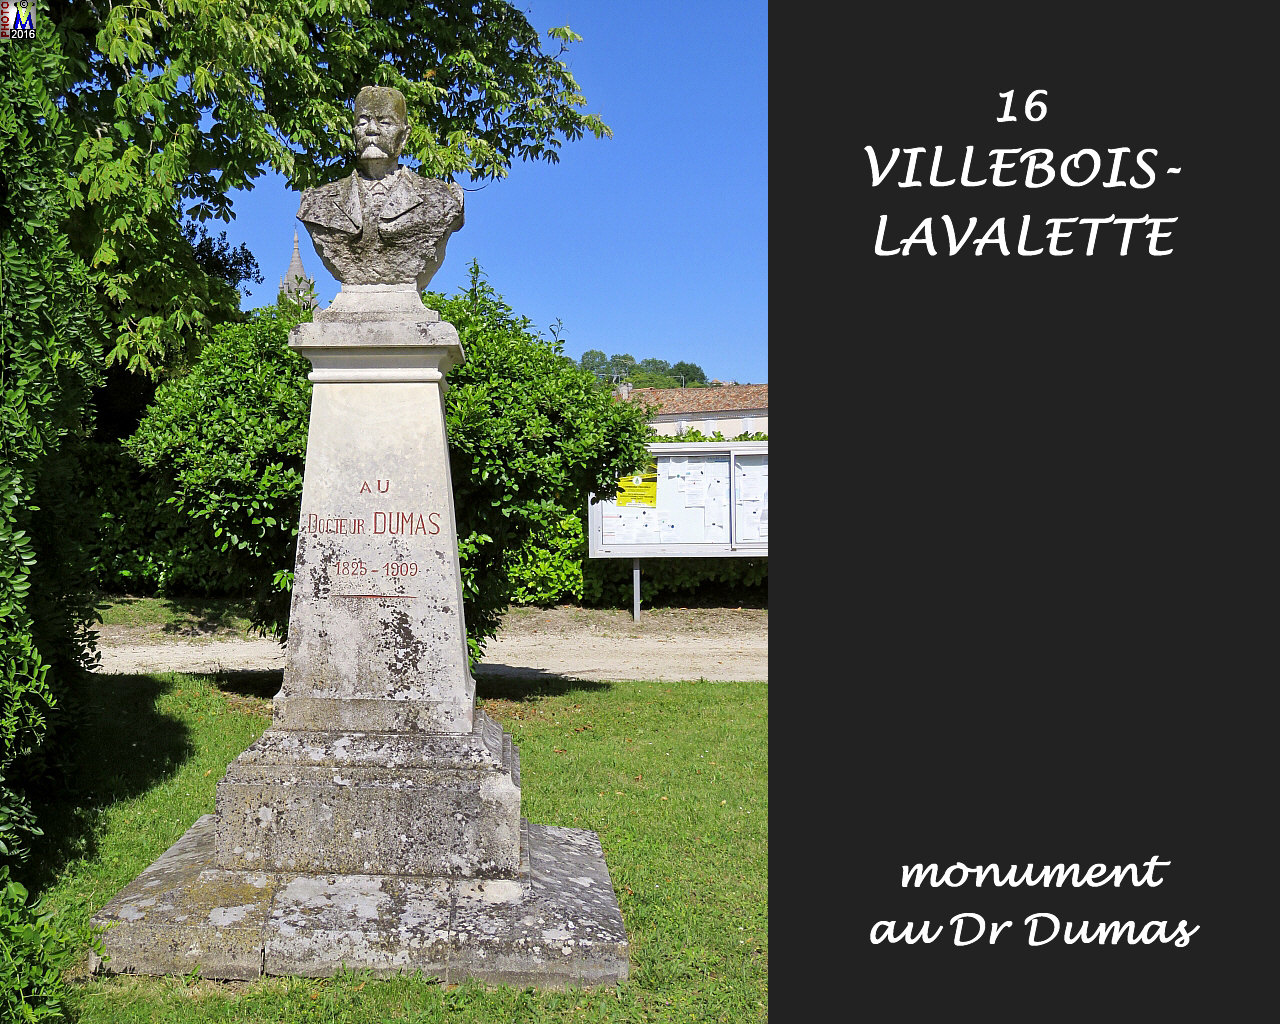 16VILLEBOIS-LAVALETTE_monument_1000.jpg